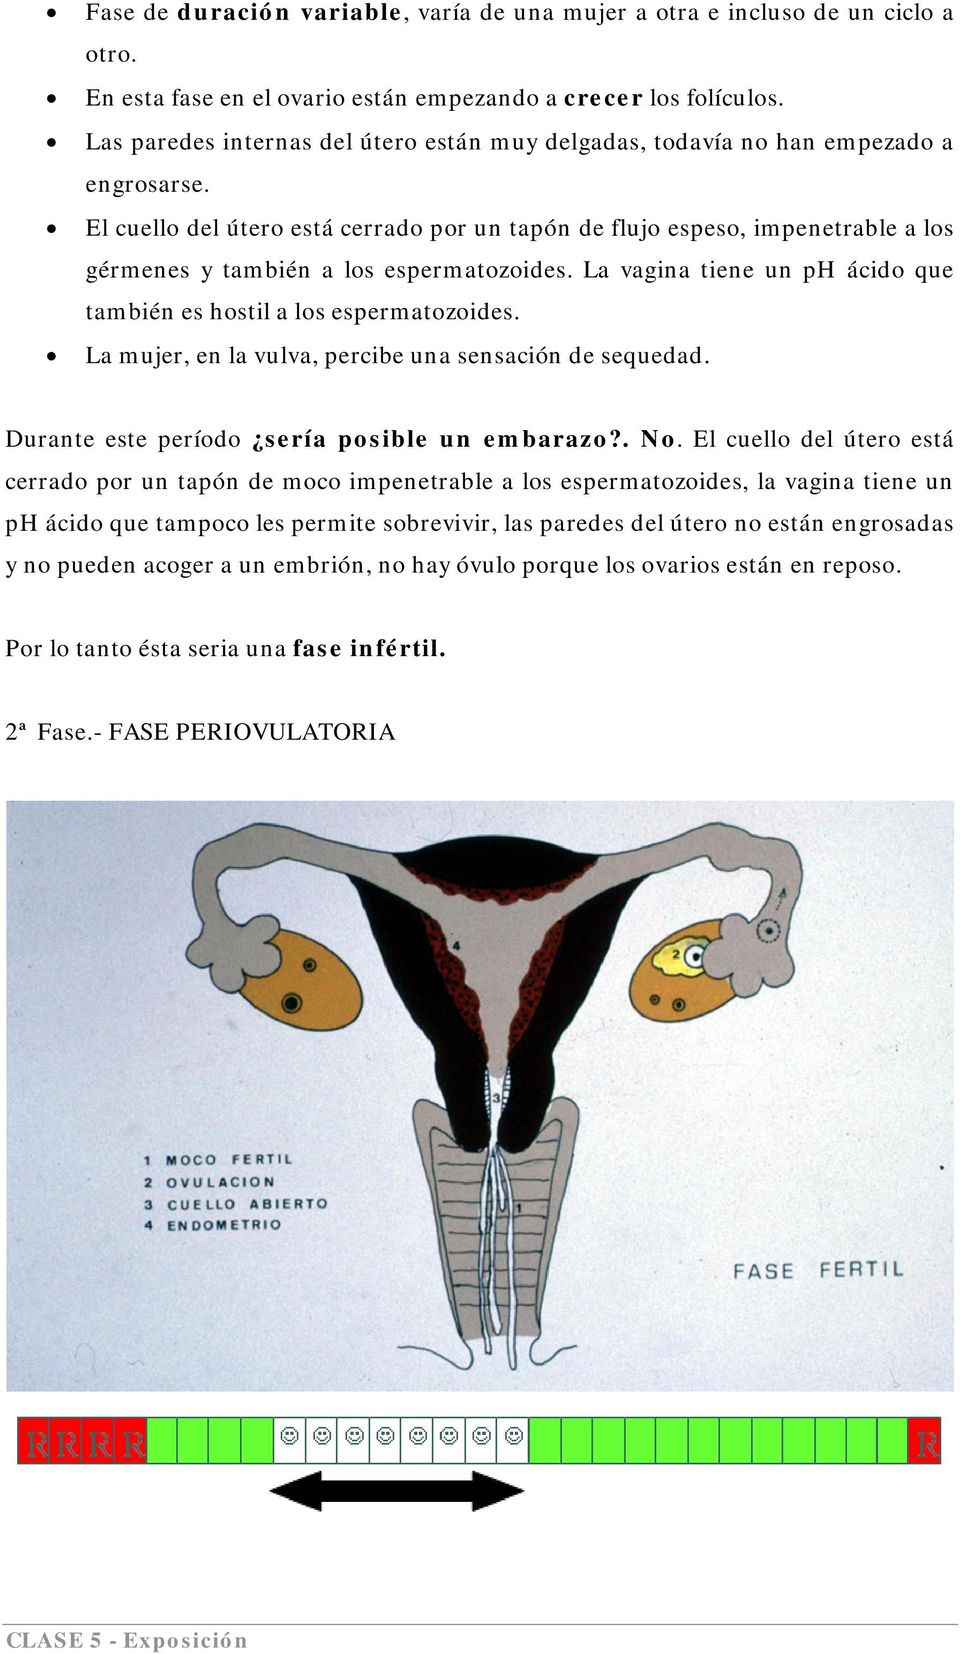 El cuello del útero está cerrado por un tapón de flujo espeso, impenetrable a los gérmenes y también a los espermatozoides. La vagina tiene un ph ácido que también es hostil a los espermatozoides.